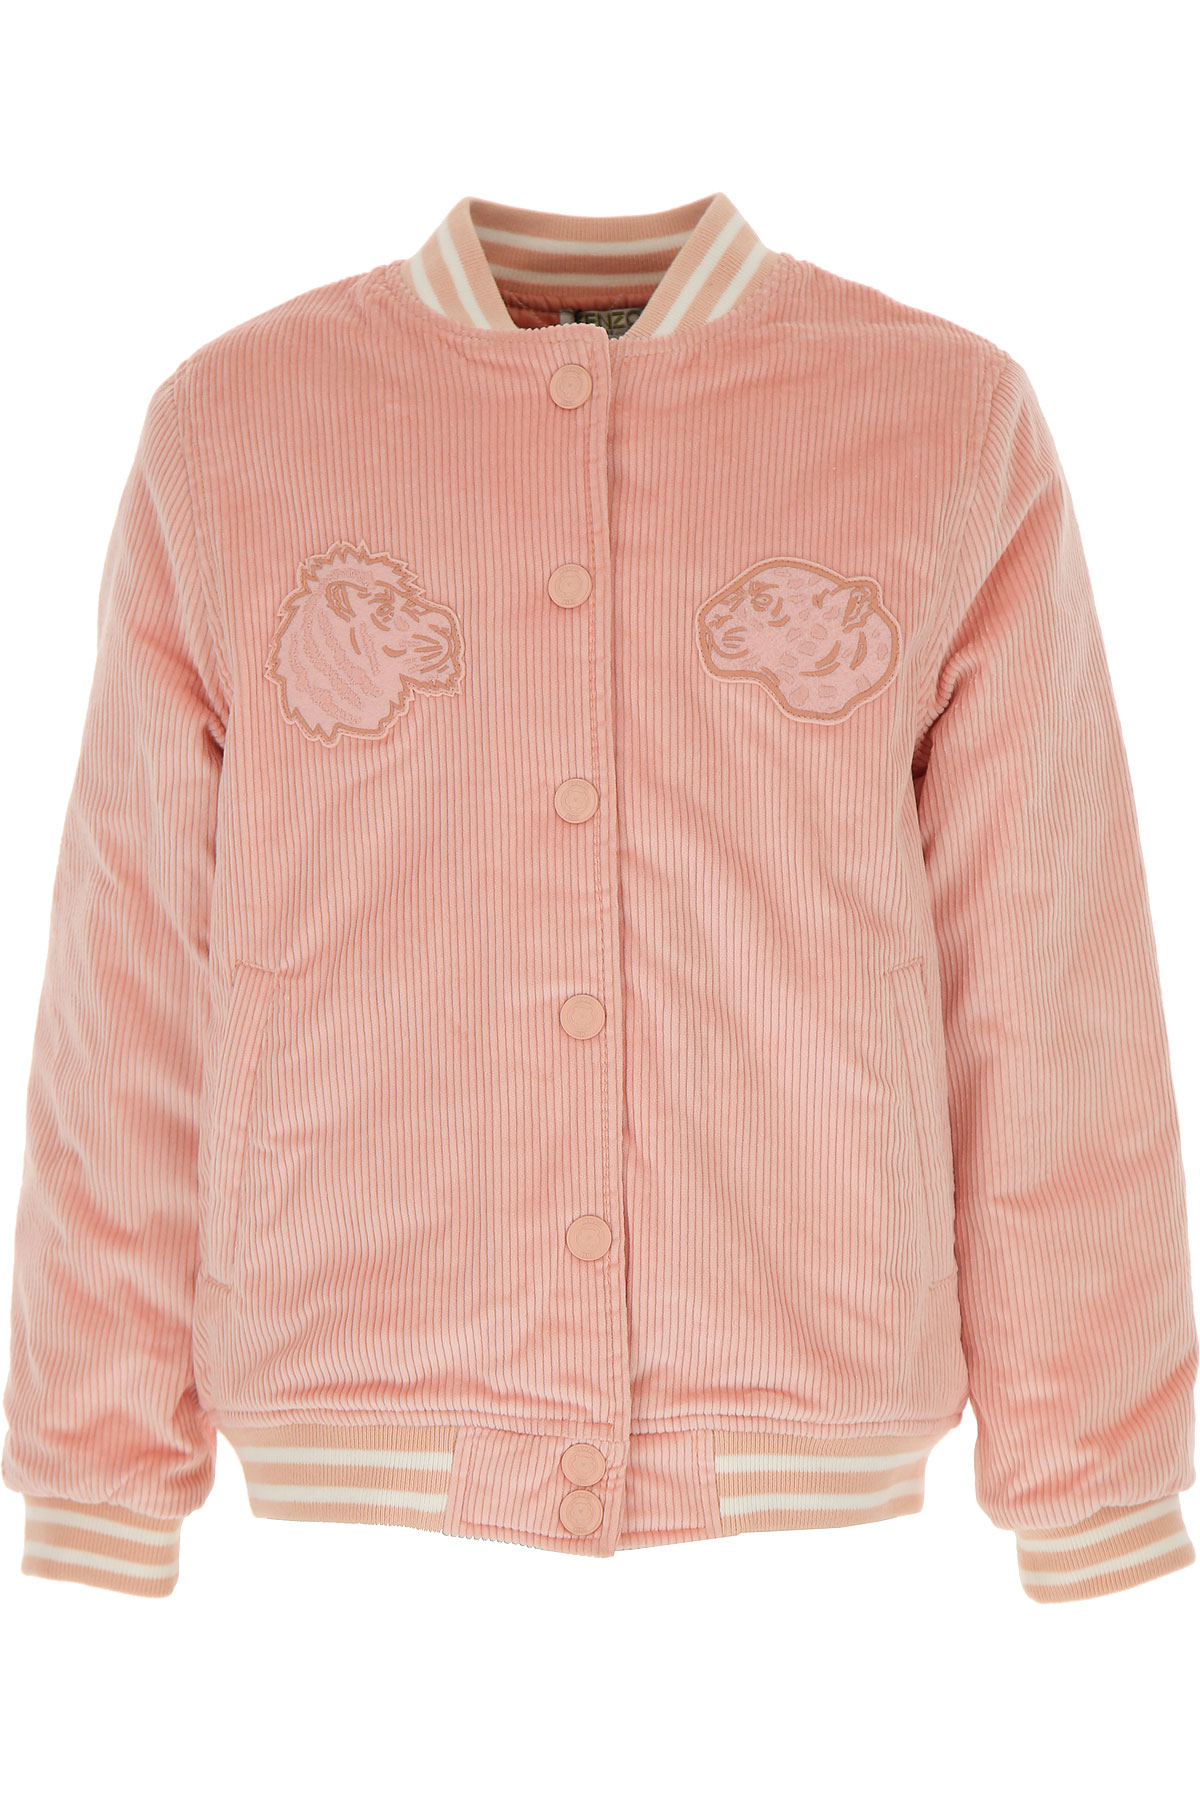 Kenzo Kinder Jacke für Mädchen Günstig im Sale, Pink, Polyester, 2017, 10Y 12Y 14Y